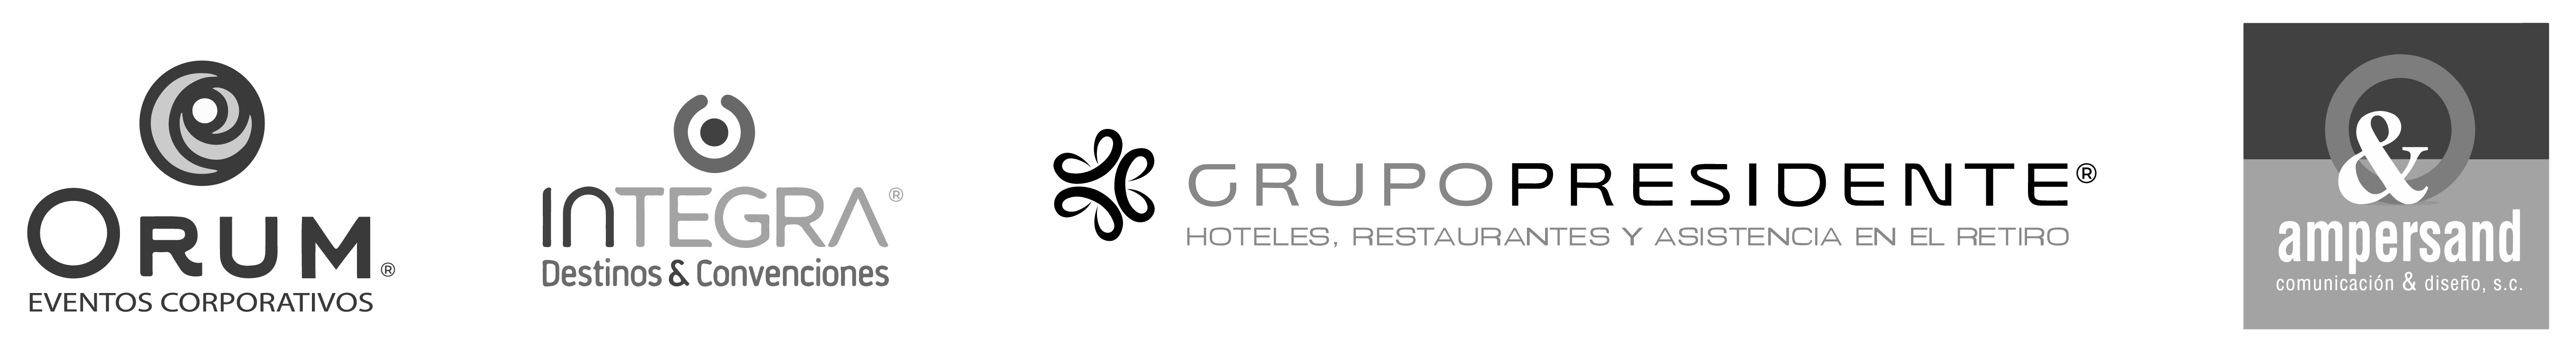 Logotipos de empresas pertenecientes a la industria de turismo y hospitalidad representados como historias de éxito en Guardia Consultores